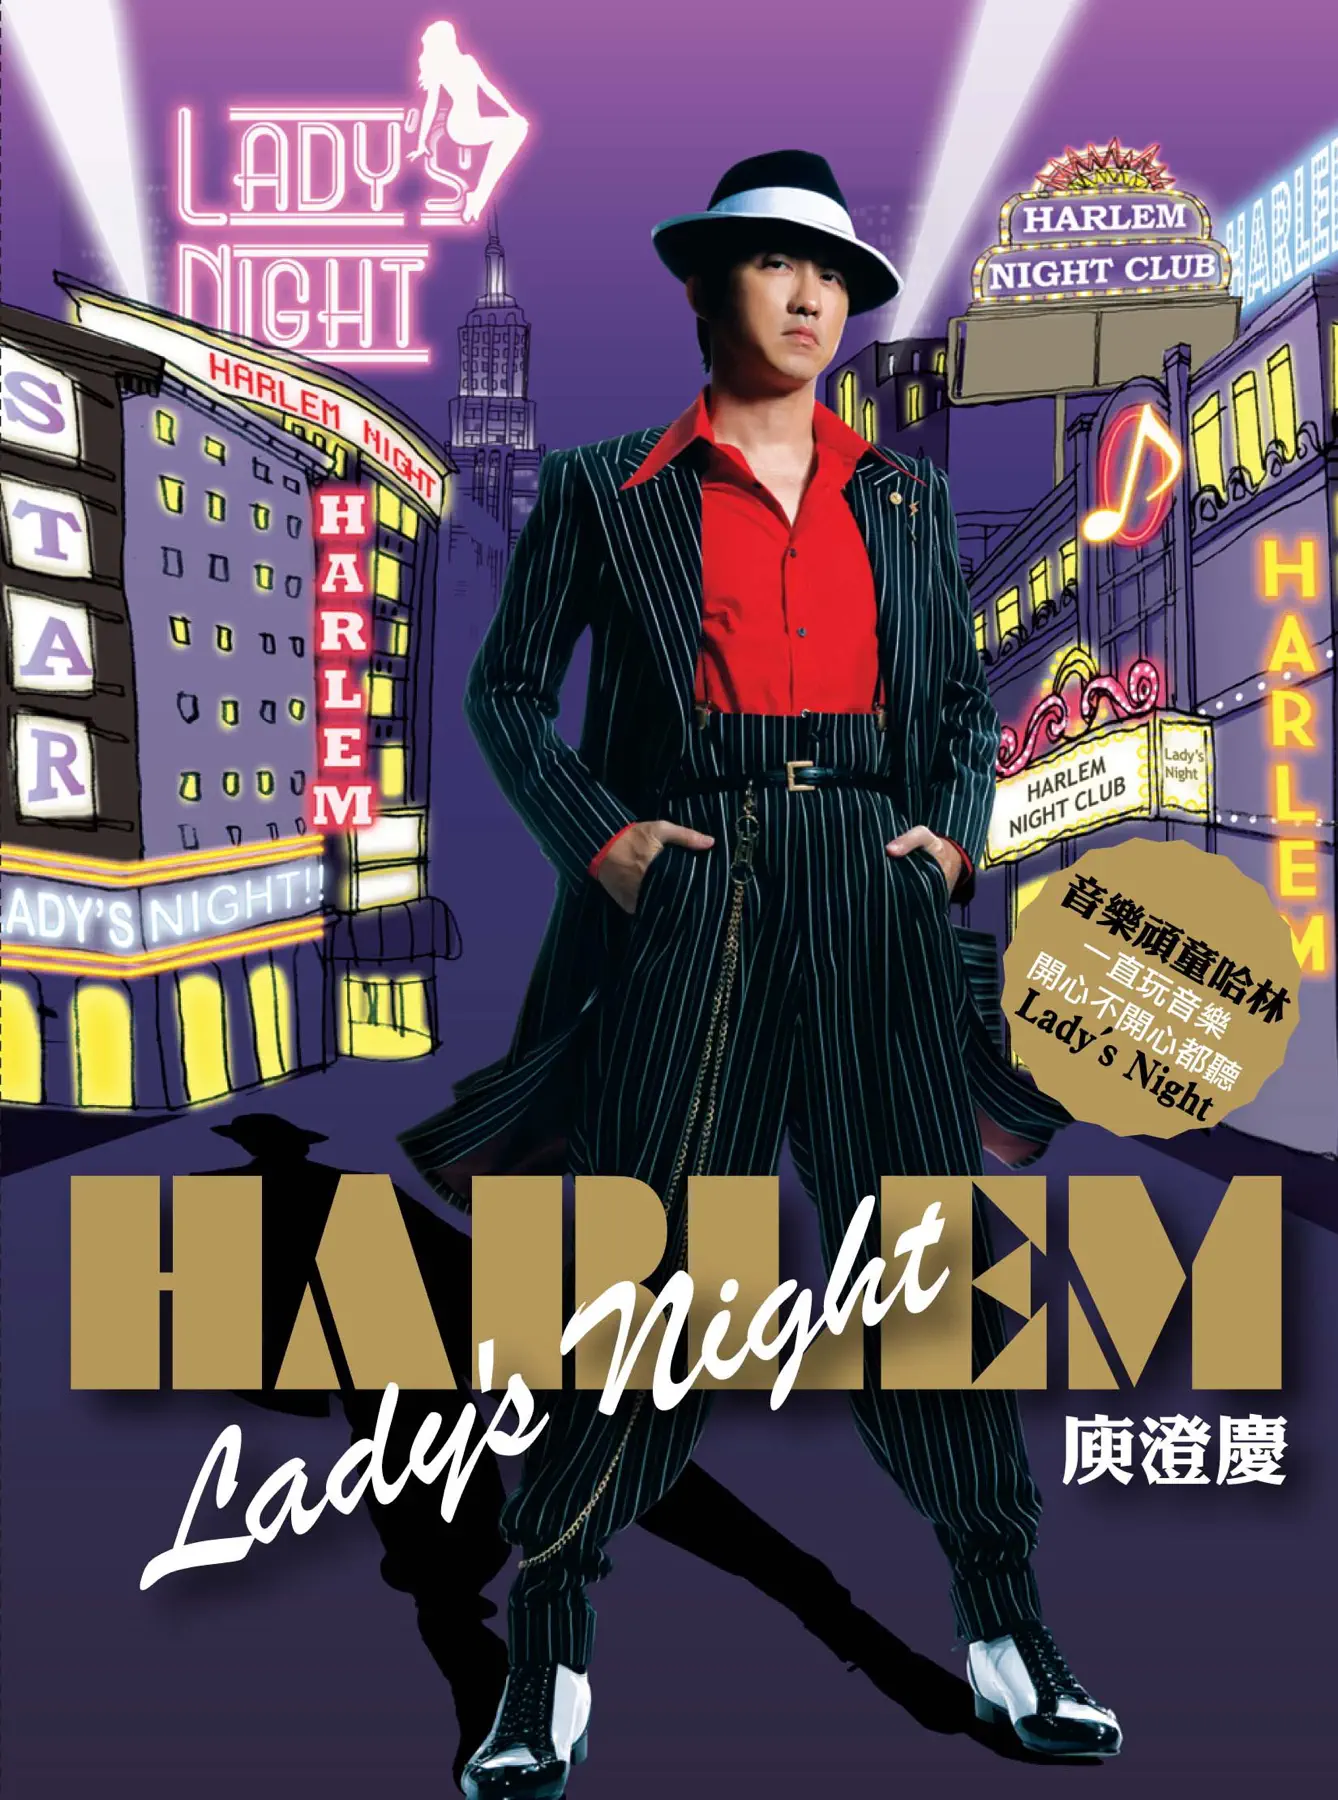 庾澄慶 - 哈林夜總會 Lady's Night (2008) [iTunes Plus AAC M4A]-新房子